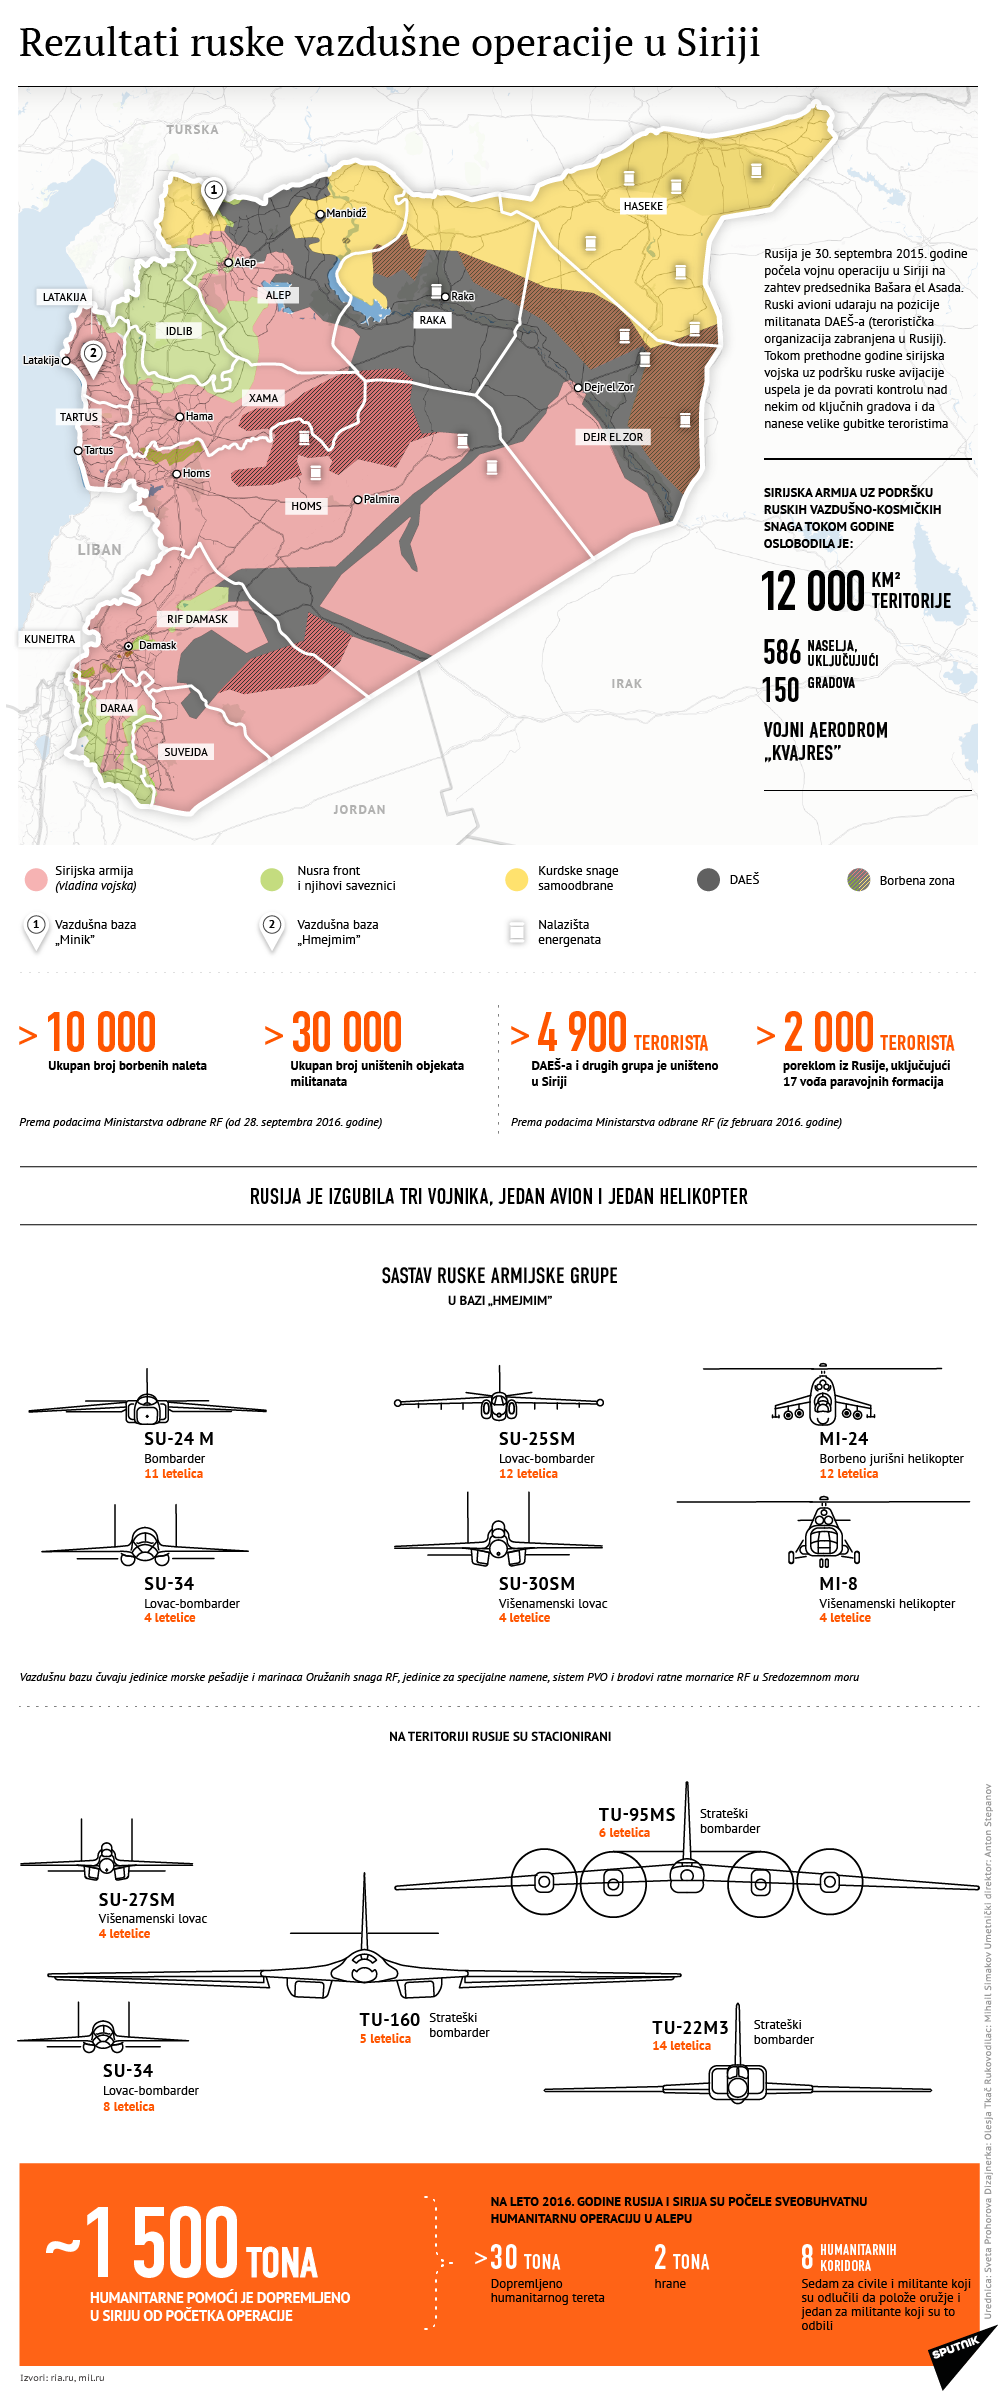 Rezultati ruske vojne operacije u Siriji lat - Sputnik Srbija